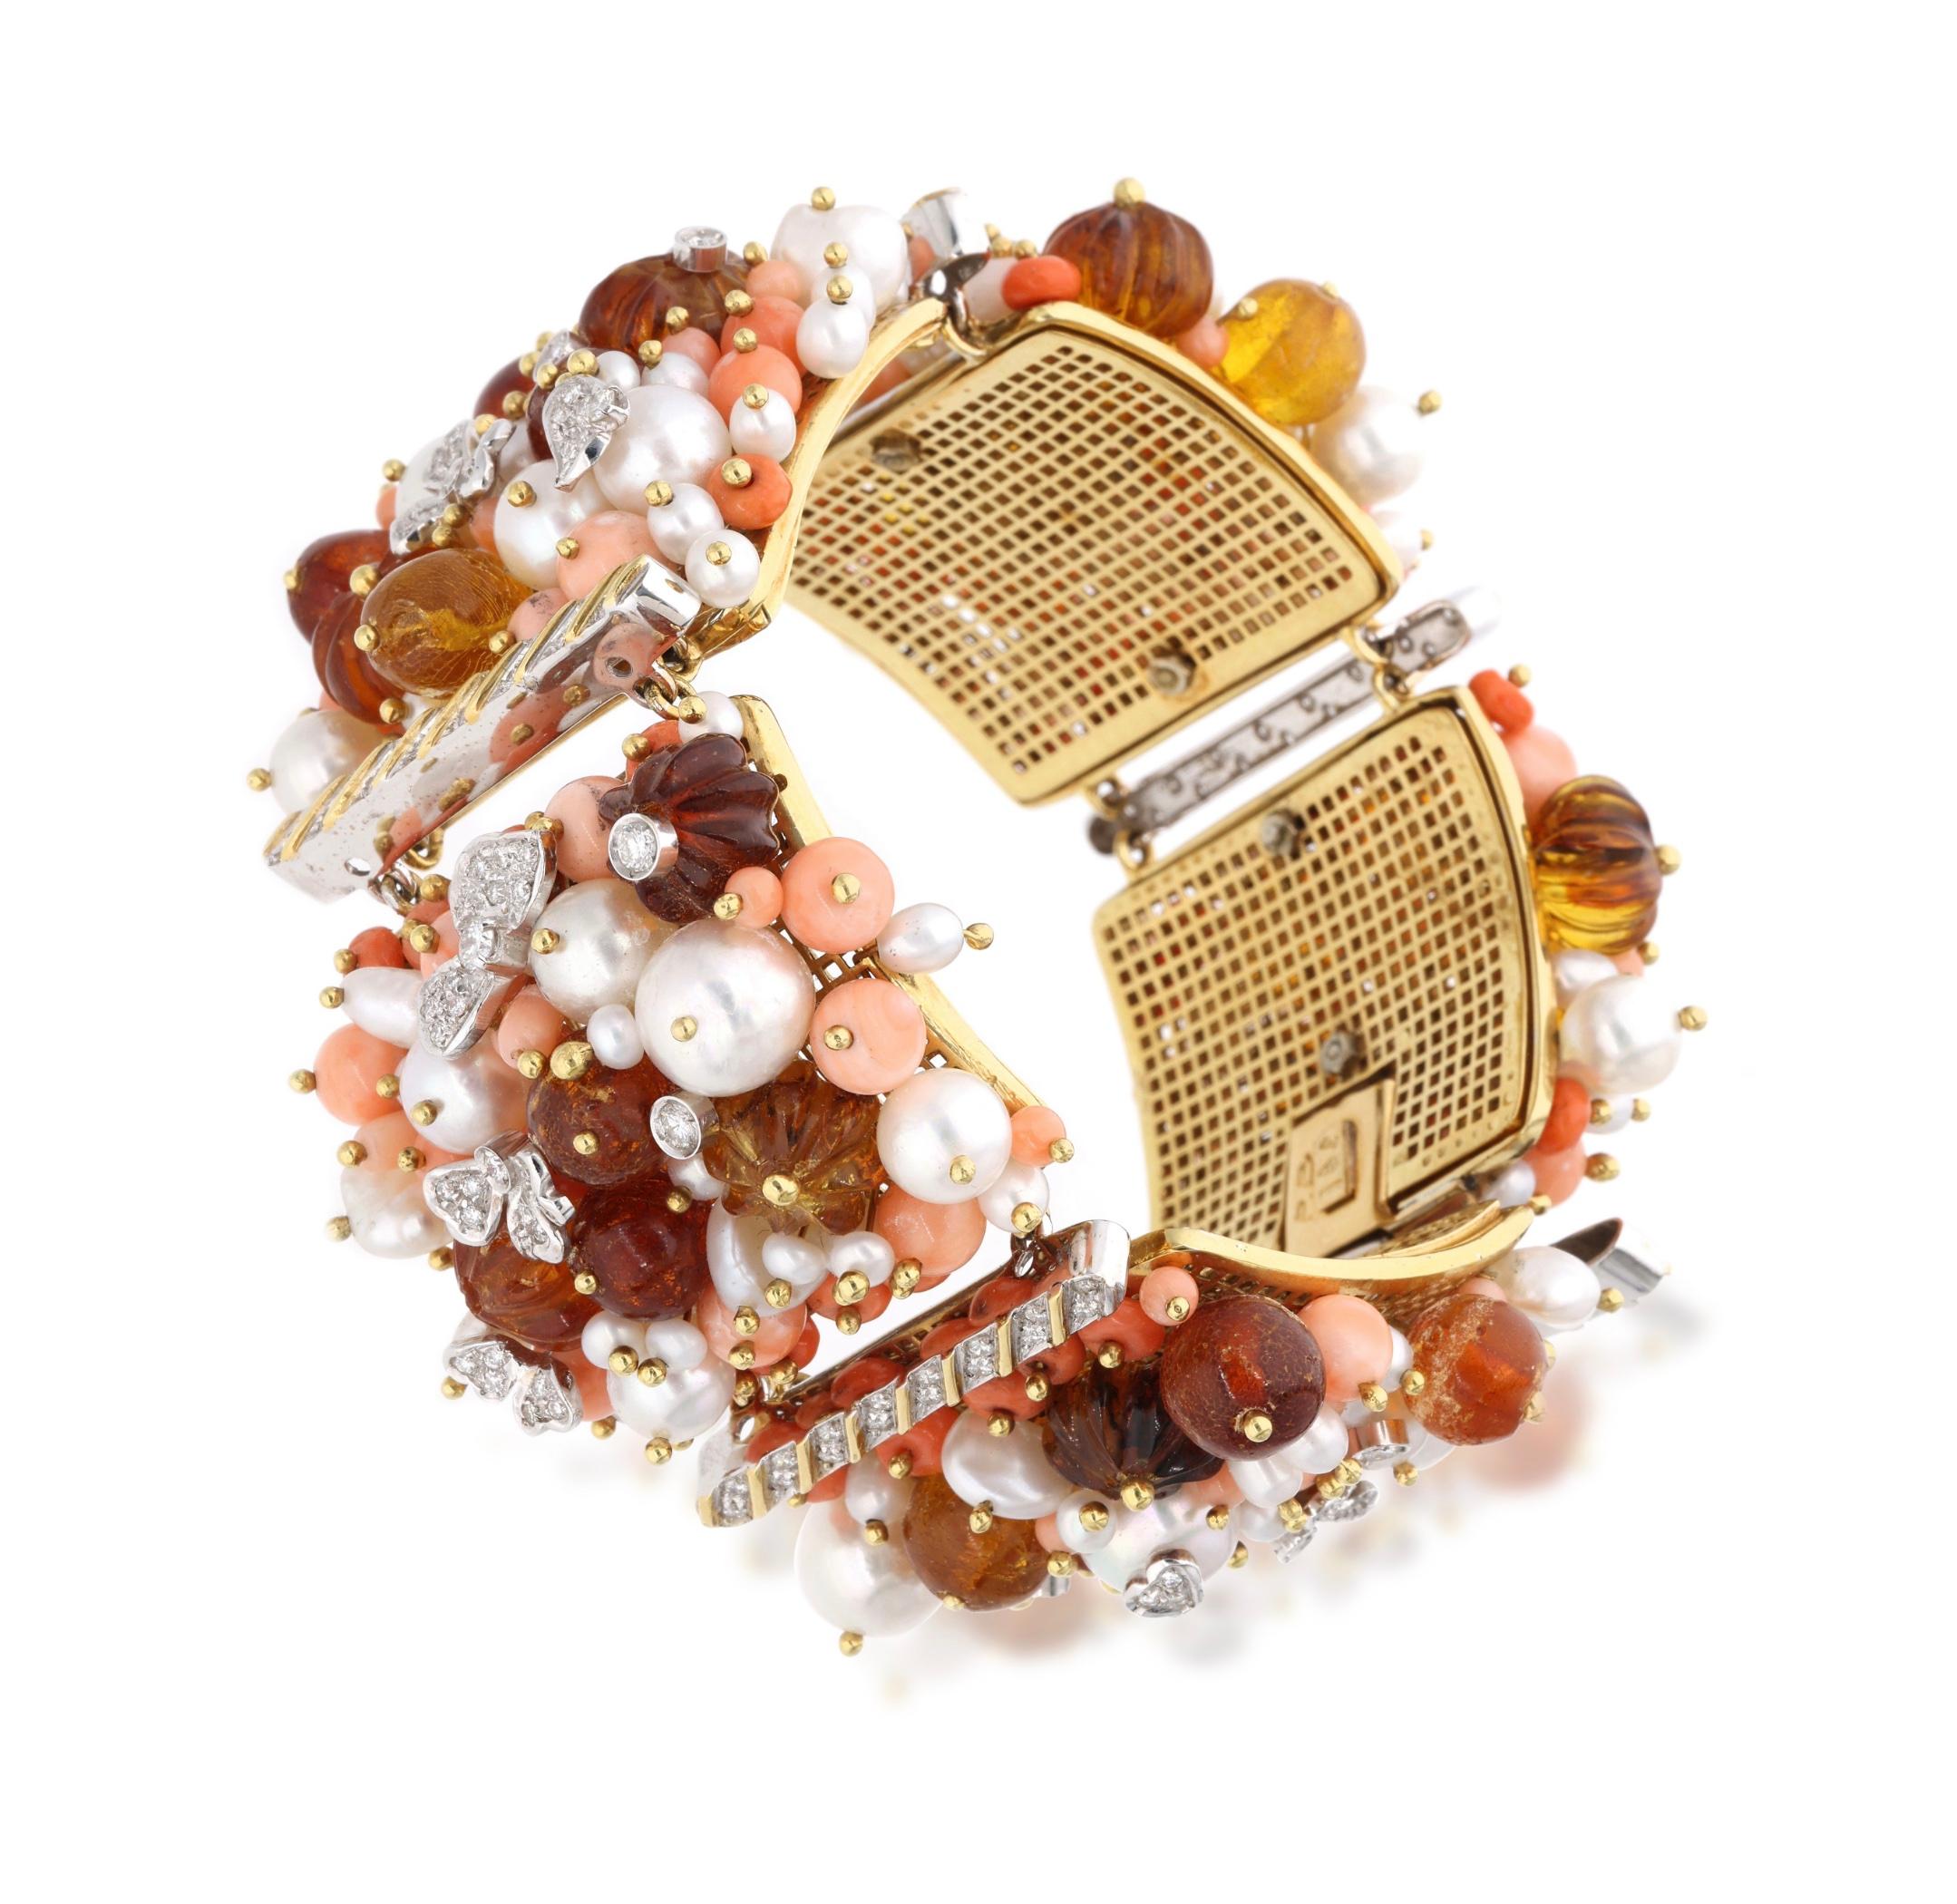 Bestehend aus rosa Korallenperlen, Bernsteinperlen und Zuchtperlen, akzentuiert durch runde Diamanten.

- Die Diamanten haben ein Gesamtgewicht von etwa 1,30 Karat.
- 18 Karat Gelbgold und Weißgold
- Gesamtgewicht 148,96 Gramm
- Länge 7,5 Zoll

Der